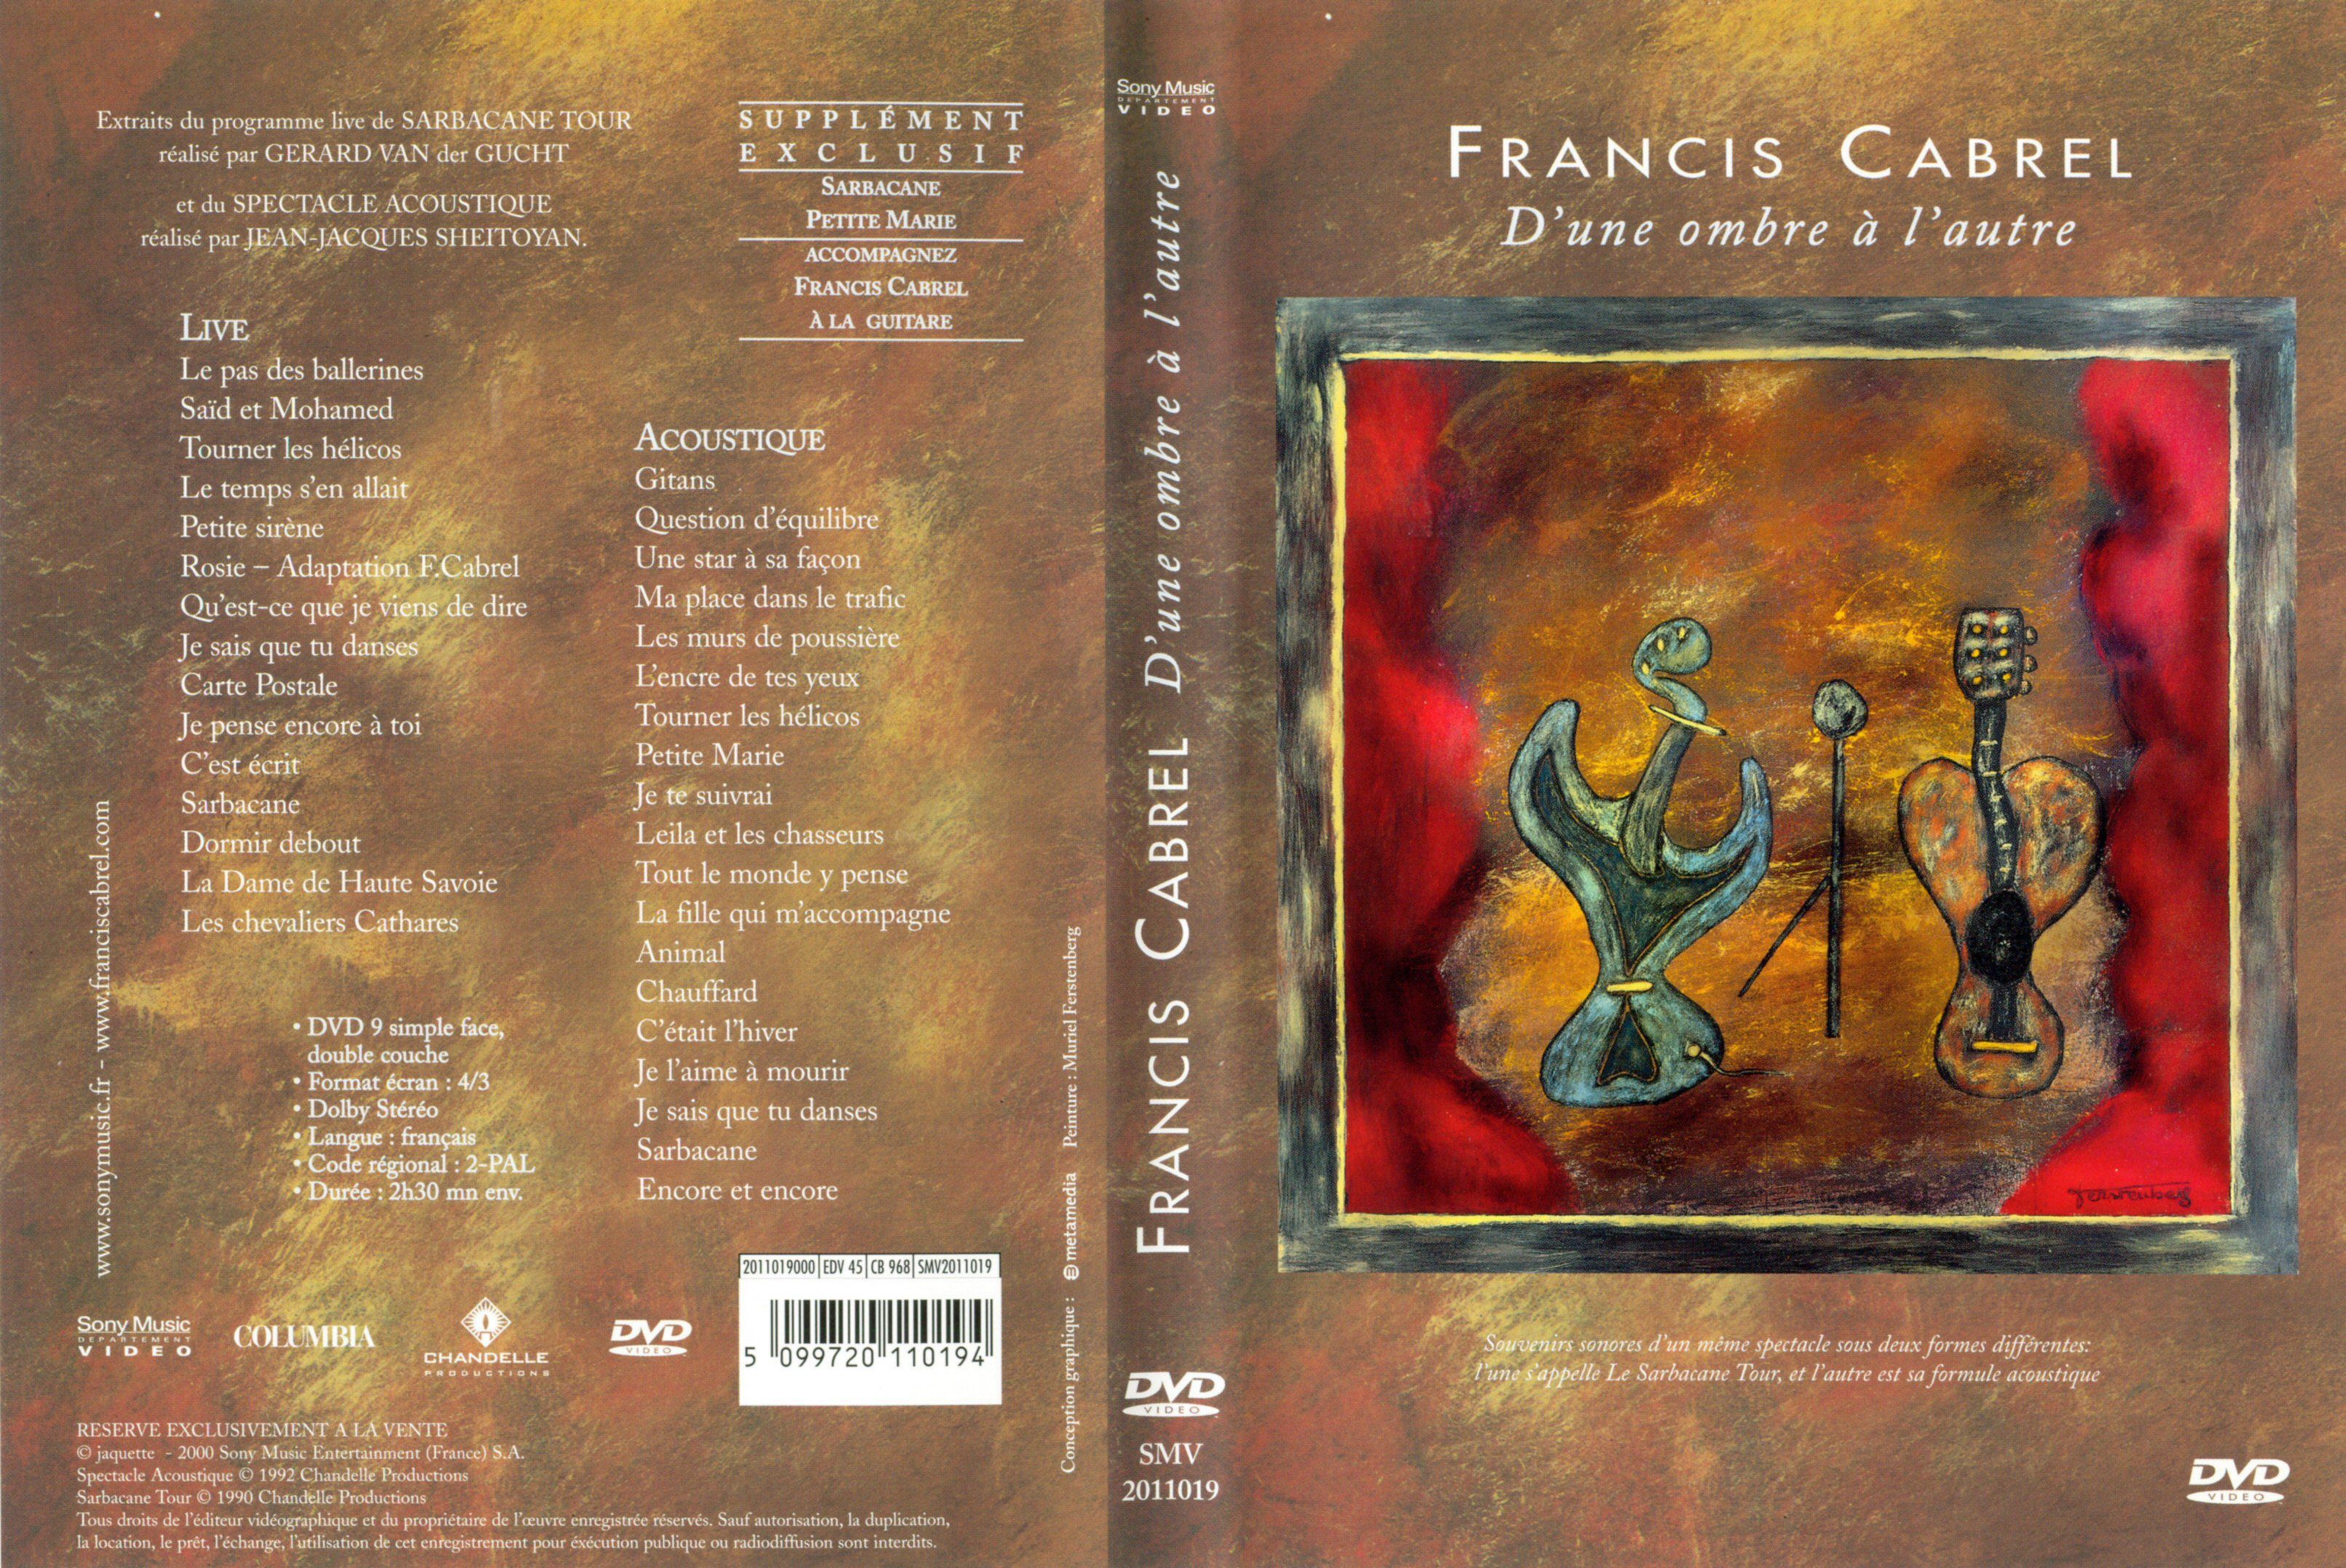 Jaquette DVD Francis Cabrel d